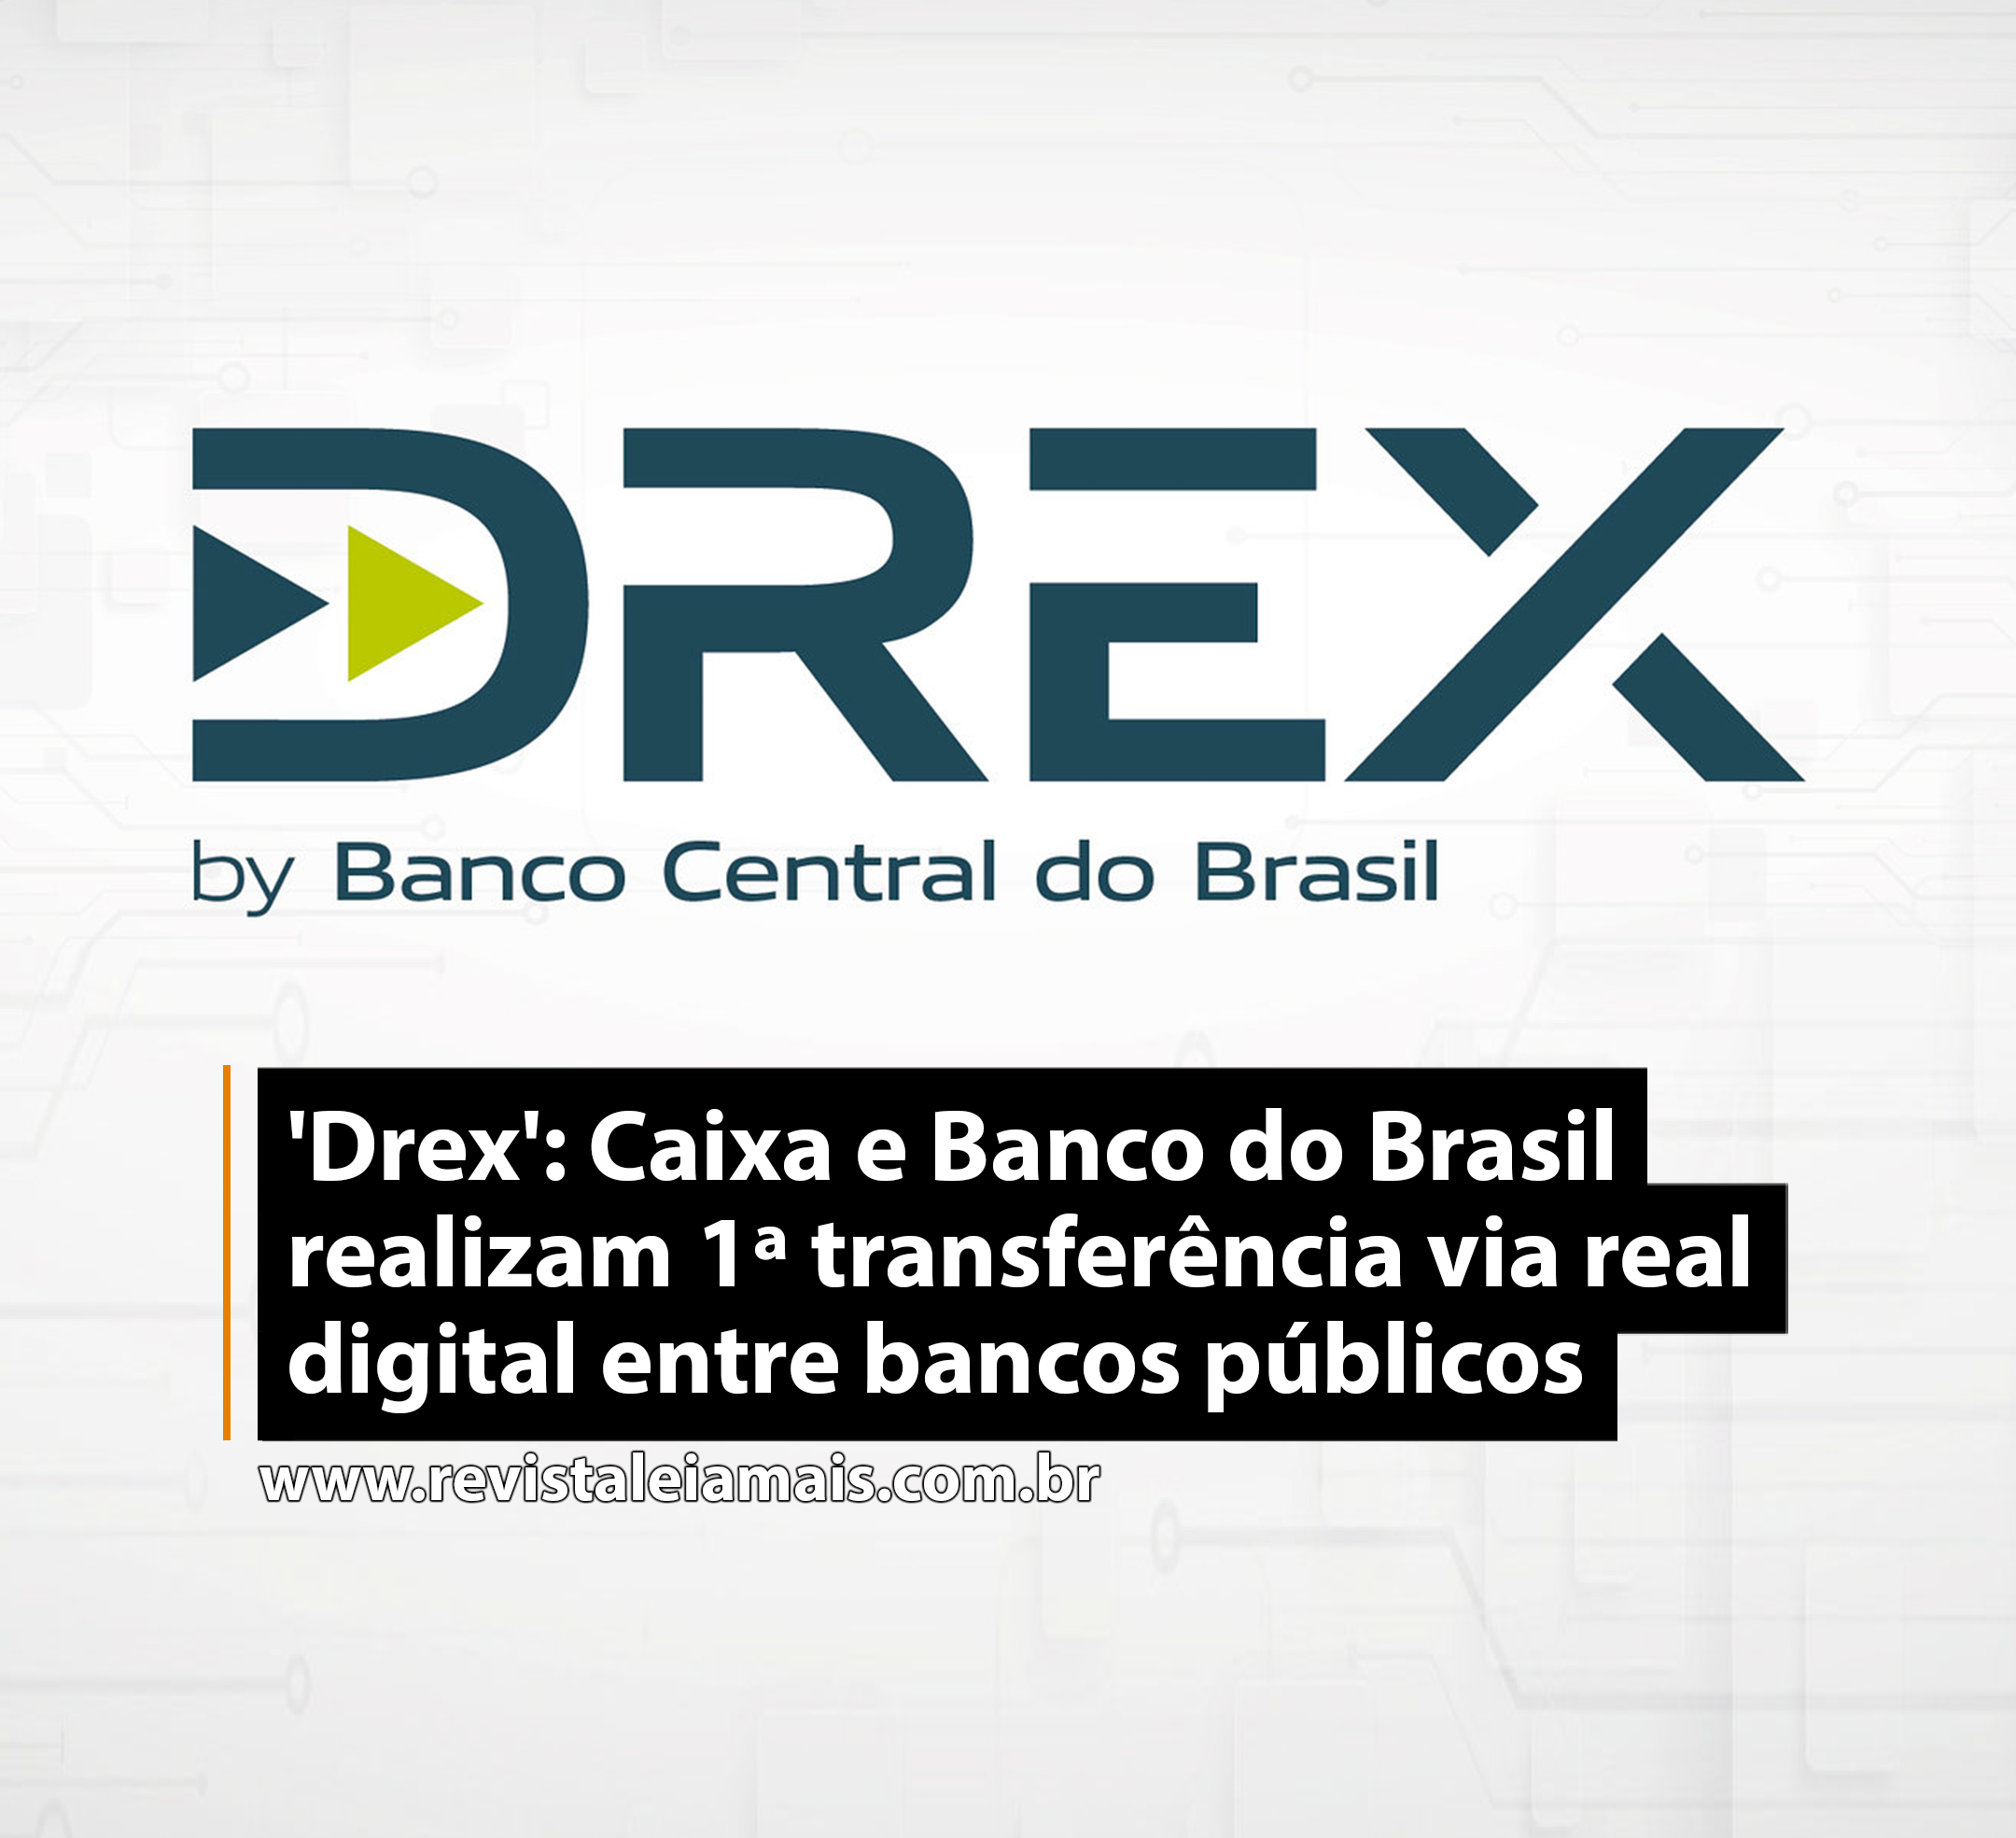 'Drex': Caixa e Banco do Brasil realizam 1ª transferência via real digital entre bancos públicos